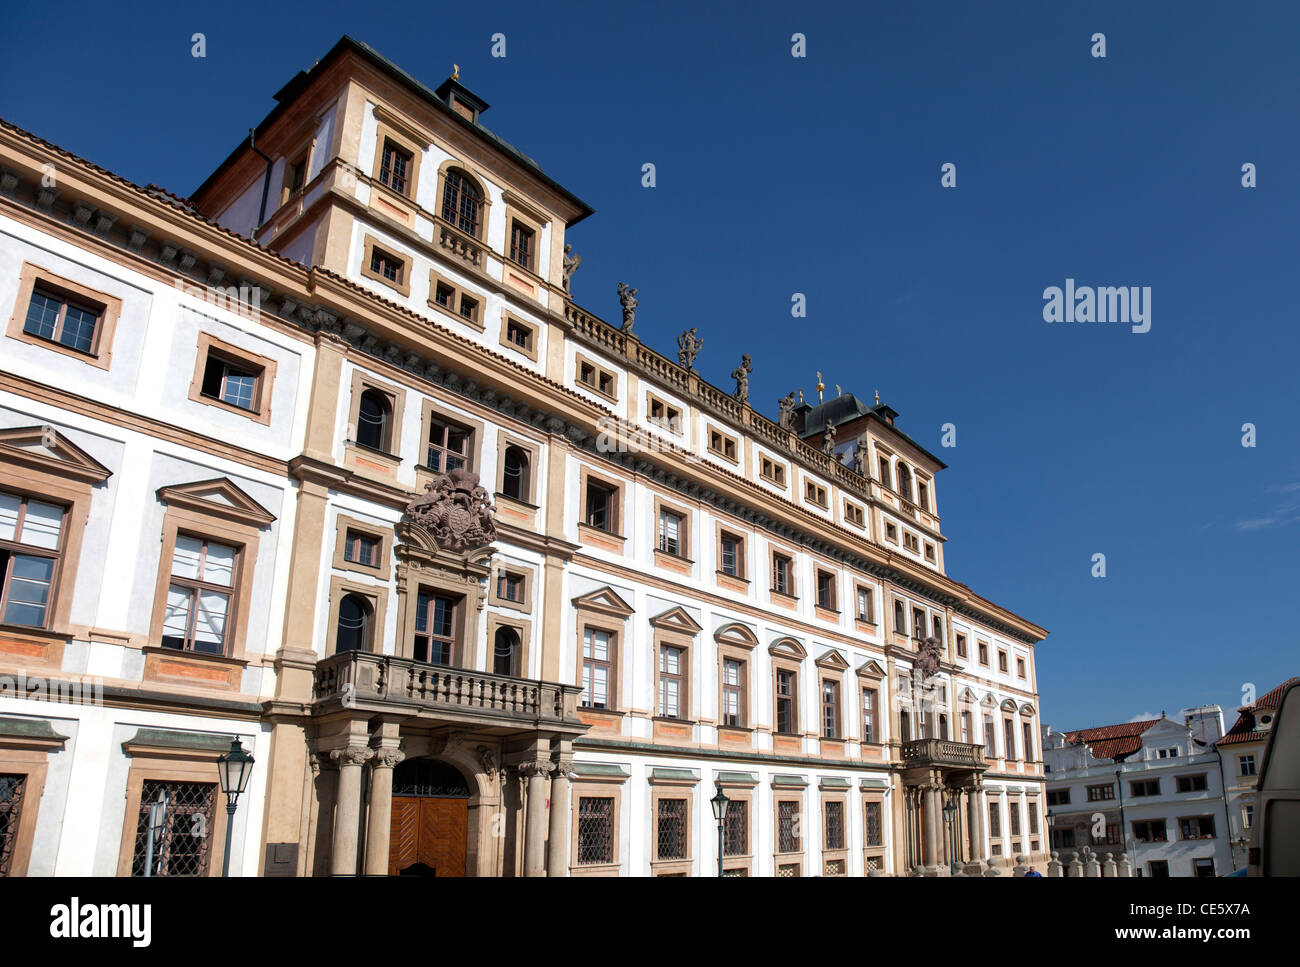 The Tuscany Palace at Hradcany Square Stock Photo